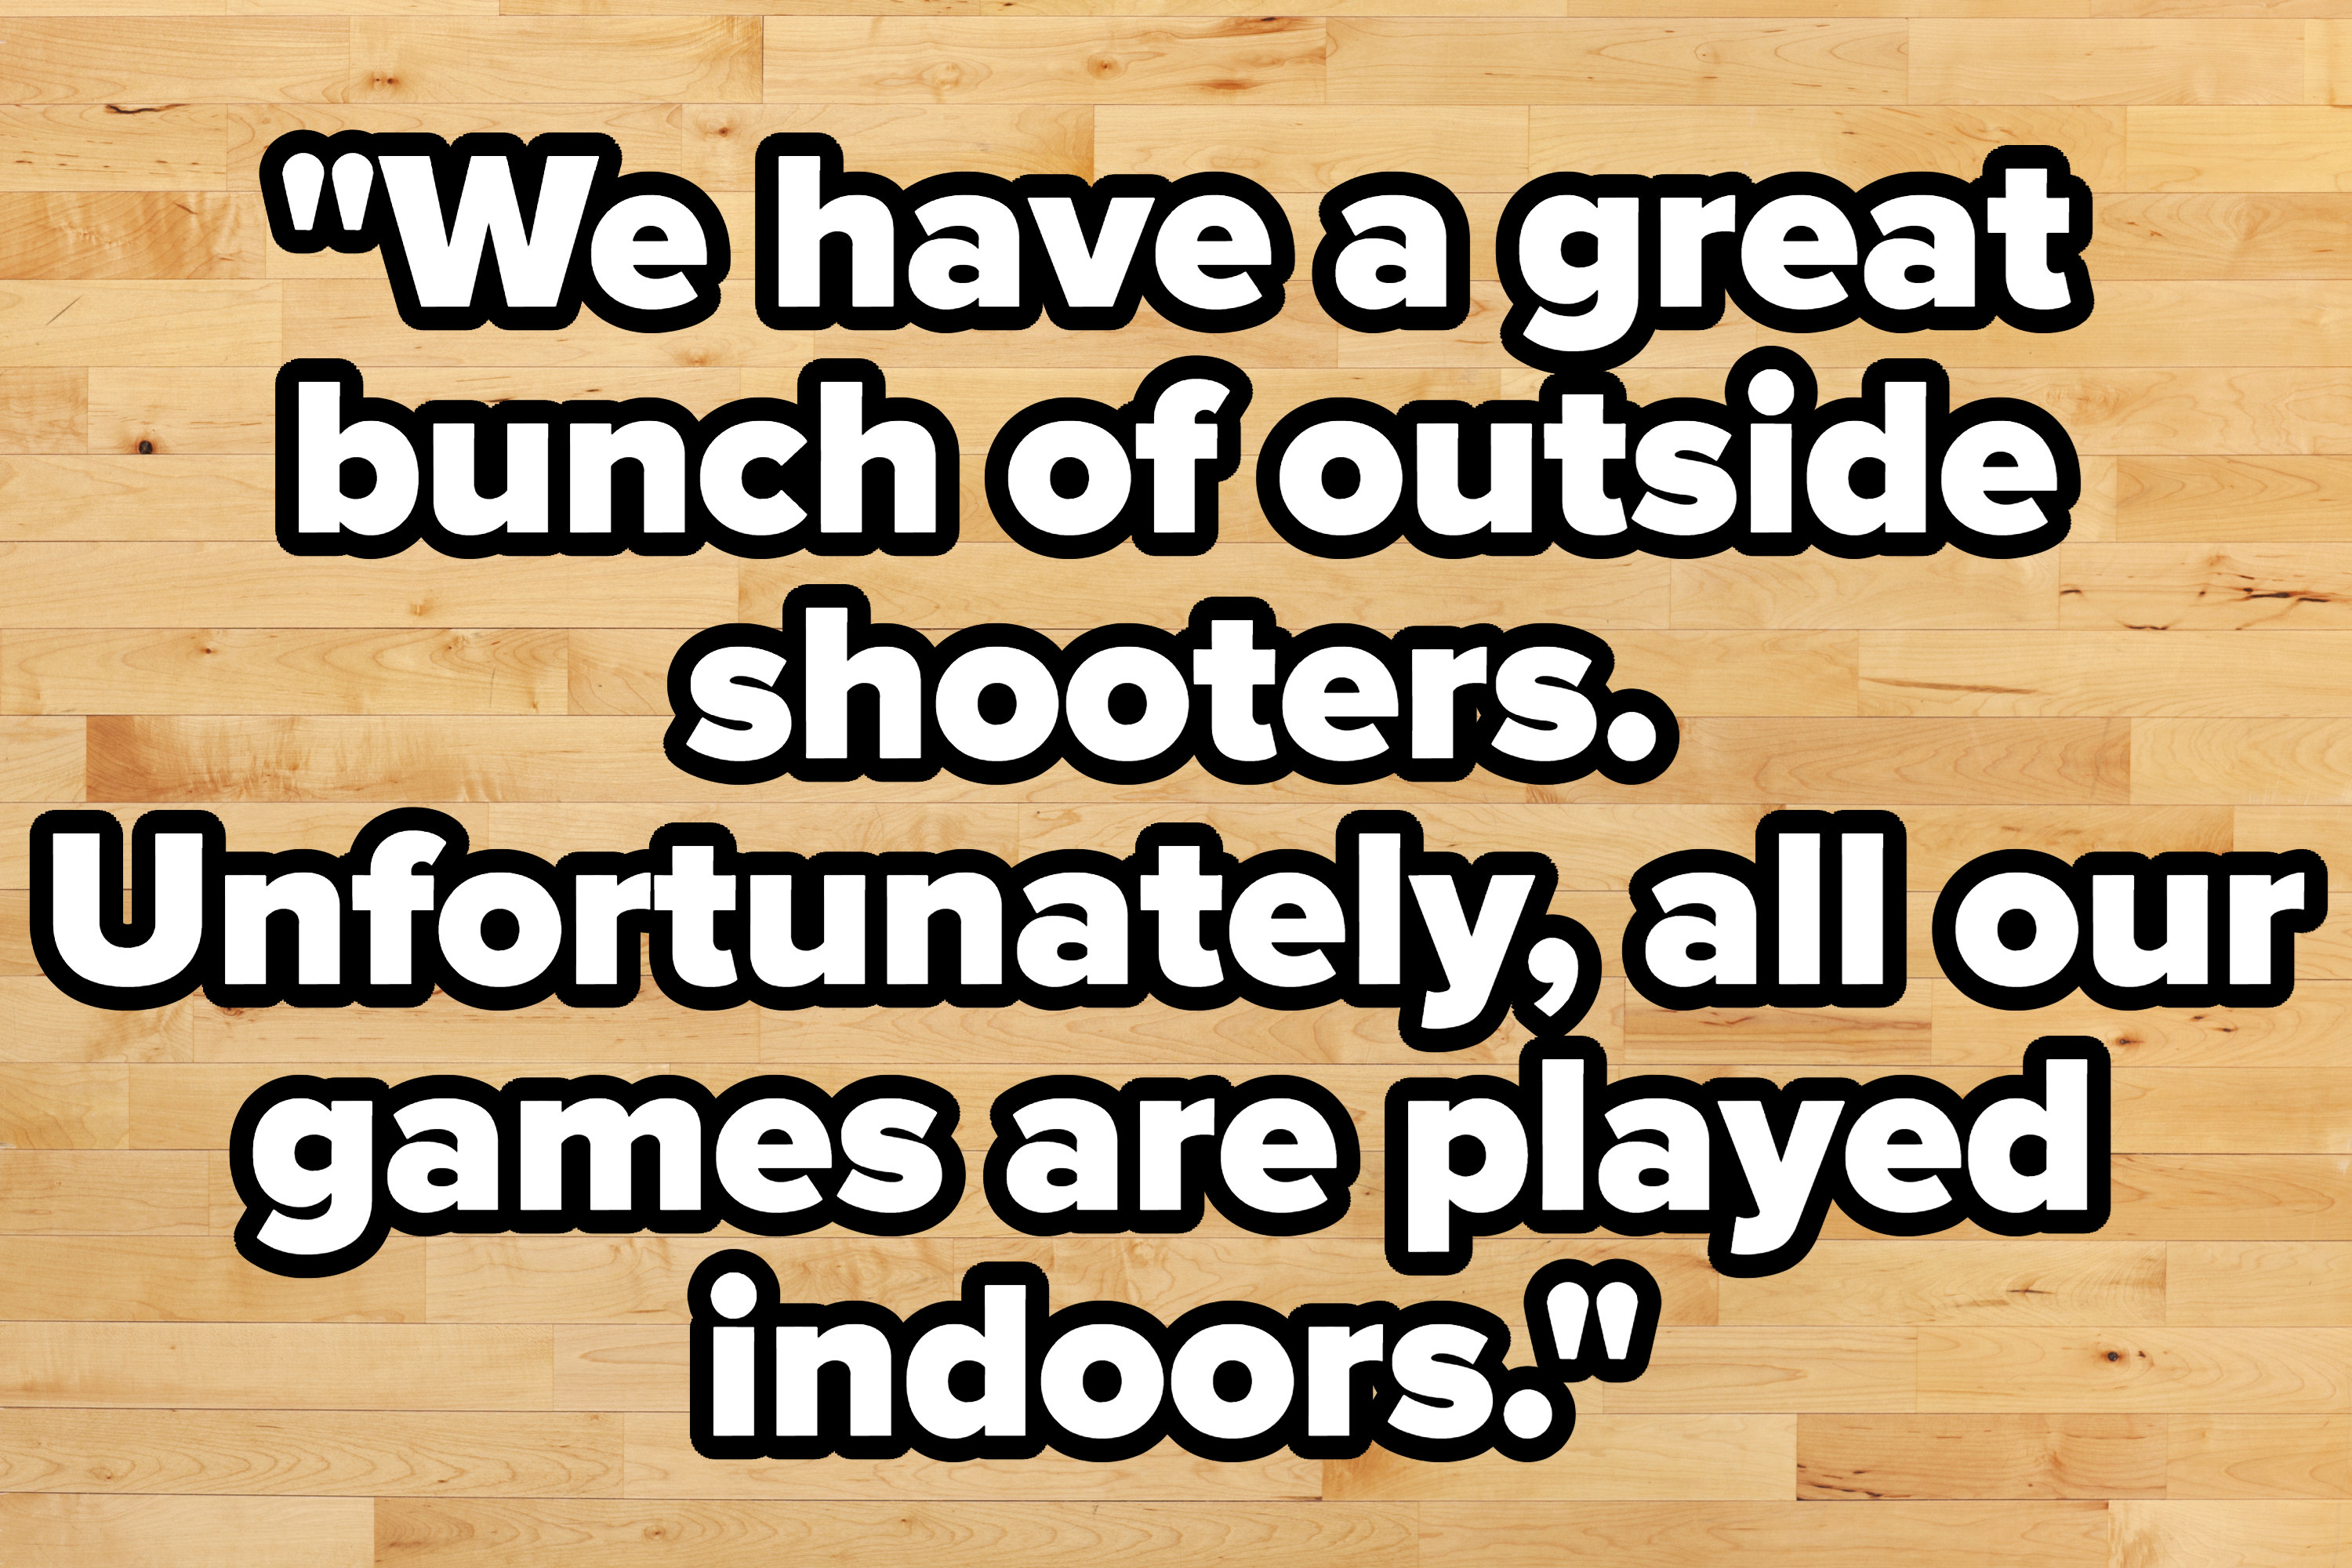 篮球场上的引用,““我们有一大群外射手。不幸的是,我们所有的游戏都玩indoors"